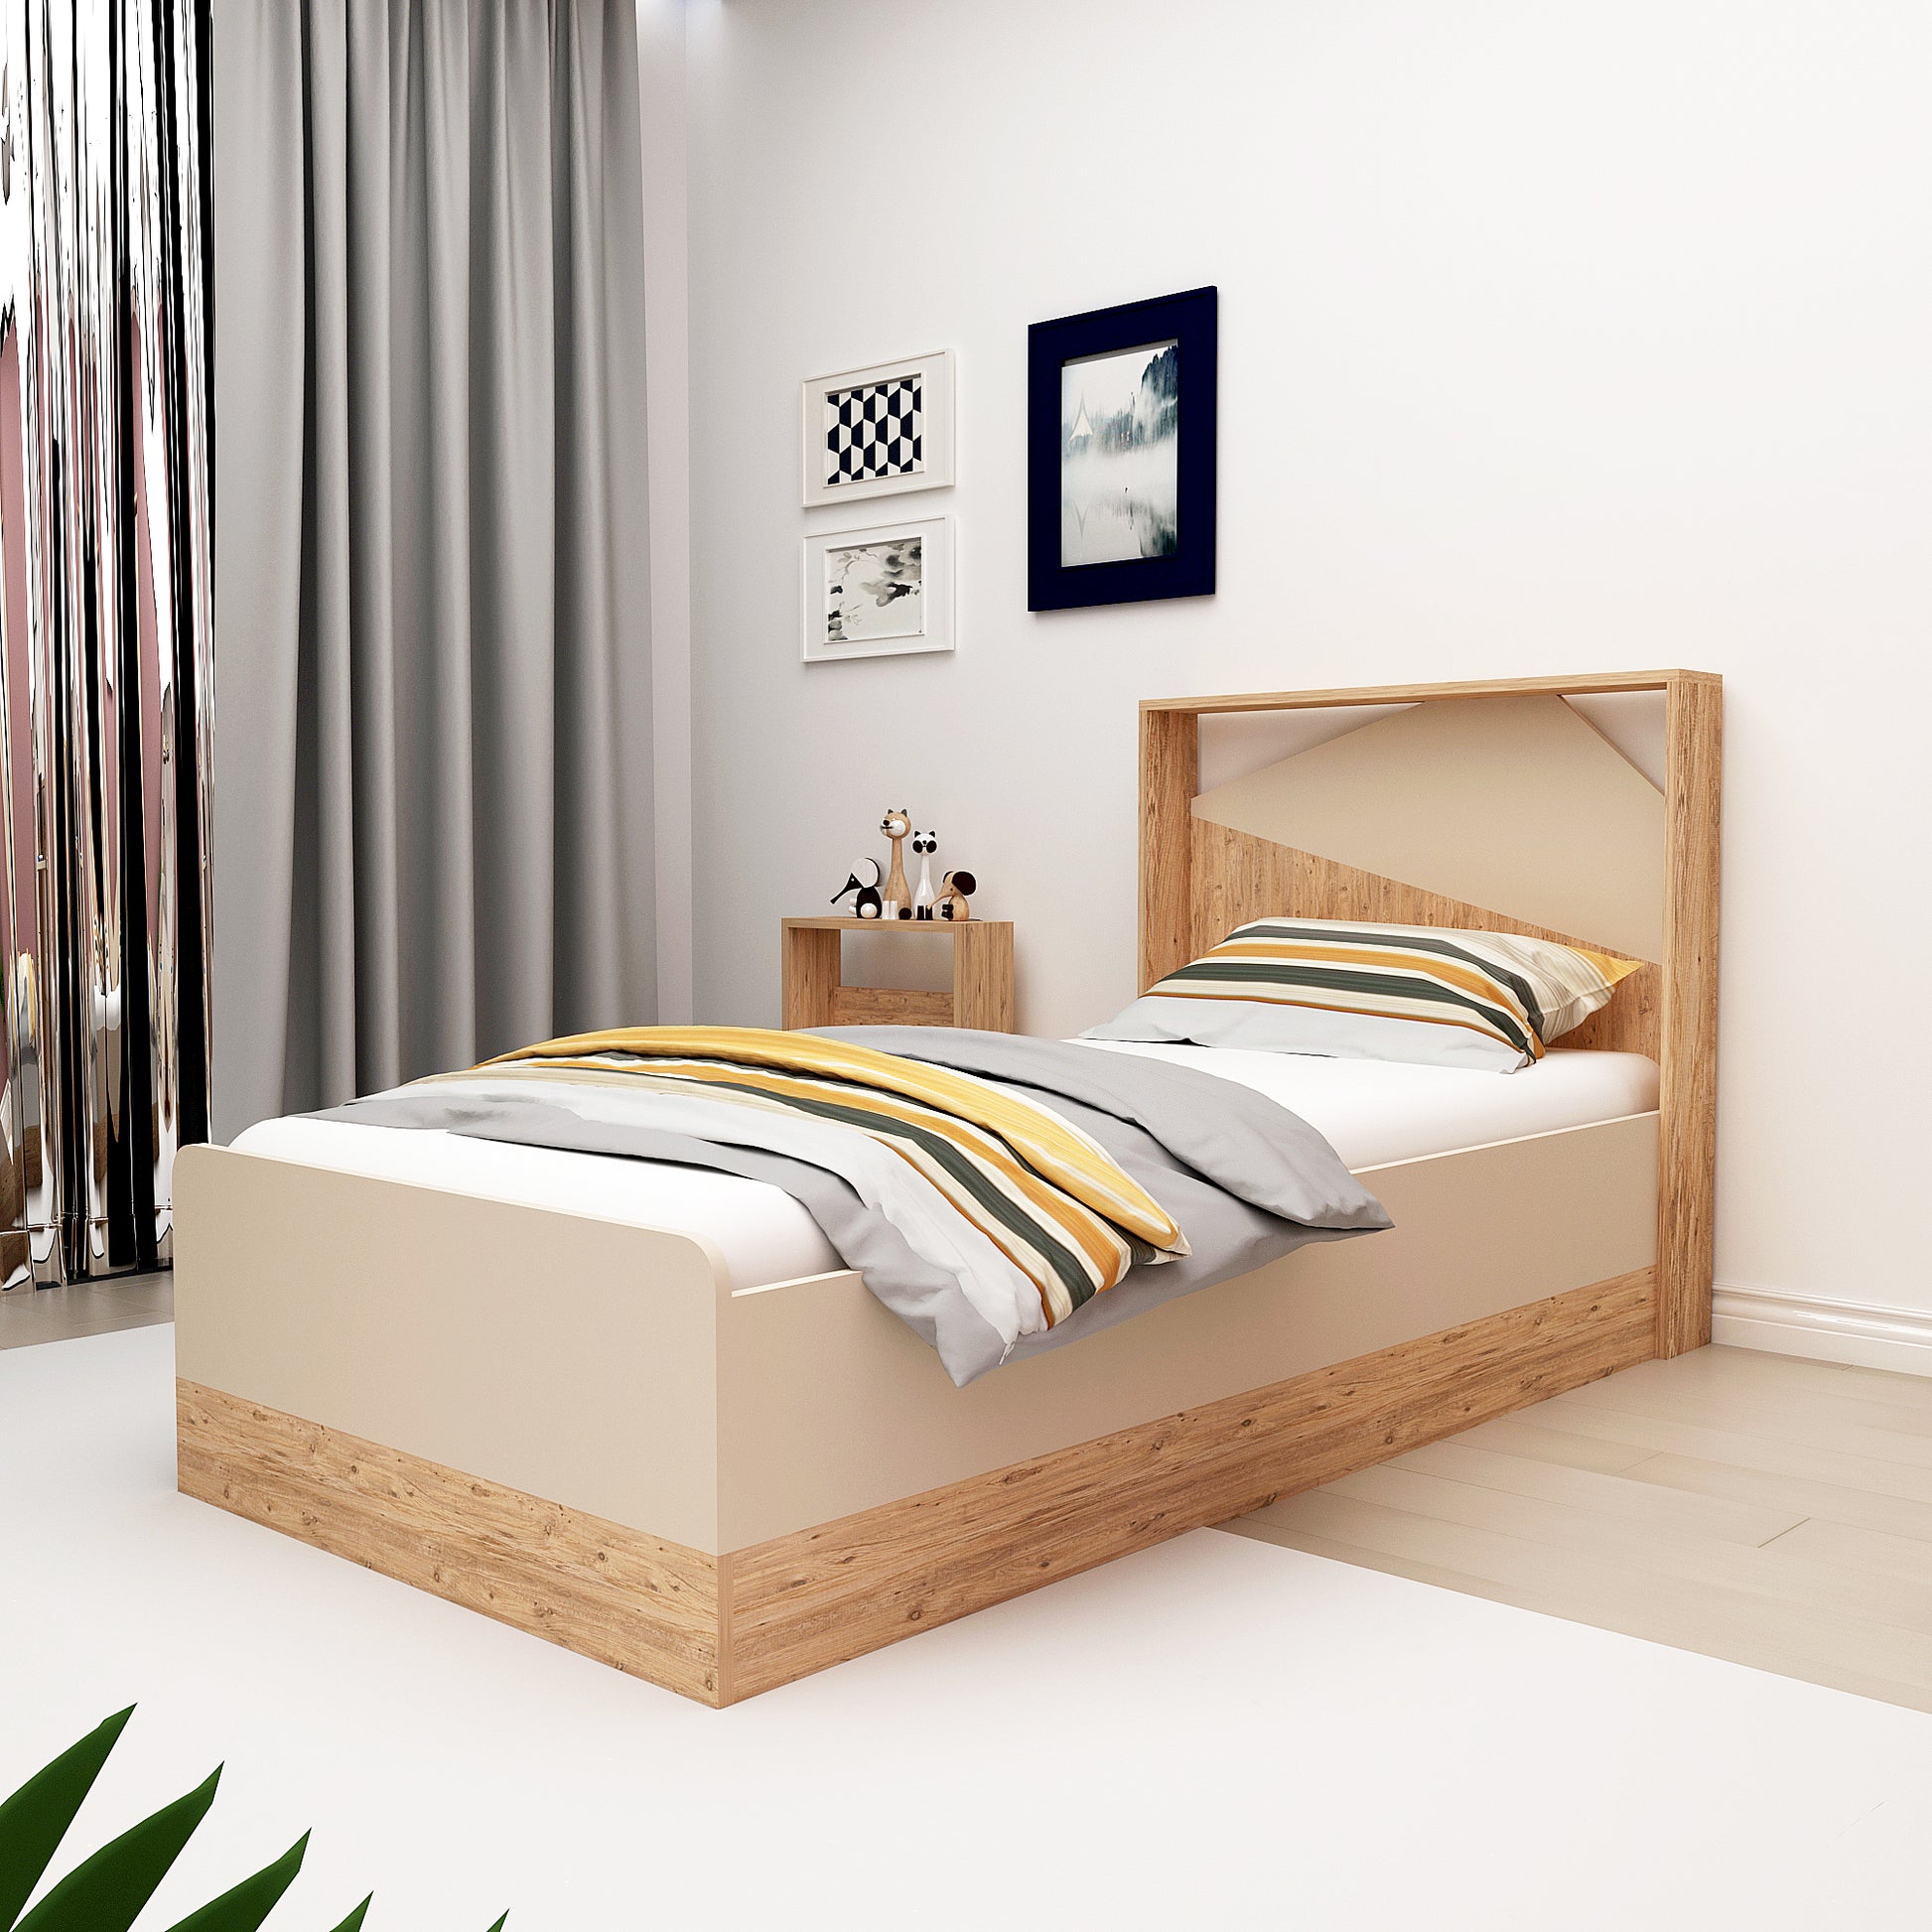 bed frame, bedstead, bed base, platform bed, Montessori bed, panel bed, bedroom furniture